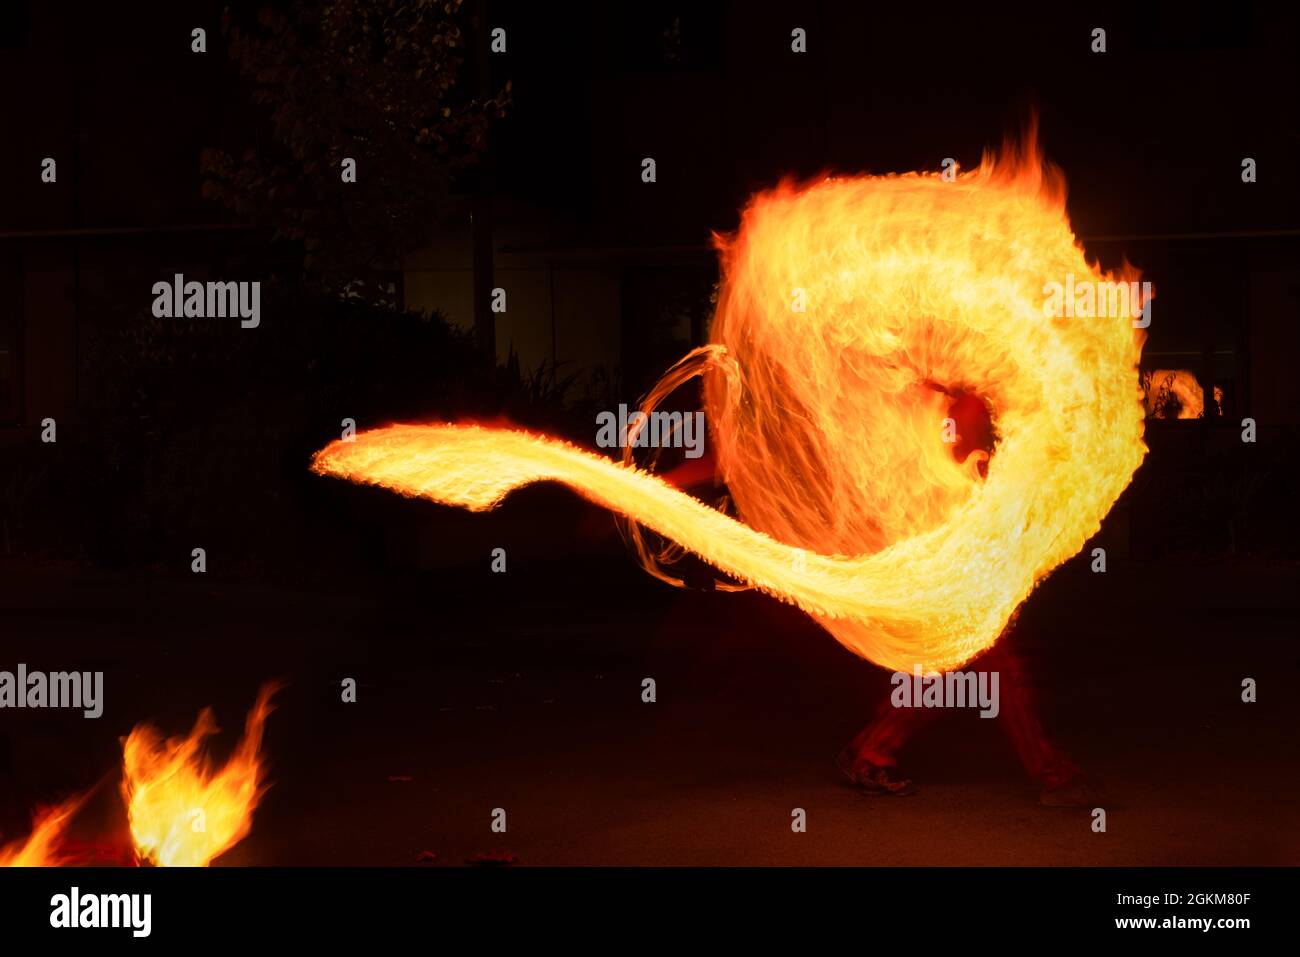 Künstler jongliert mit brennenden Poi bei Feuervorstellung. Langzeitbelichtung Bild der abstrakten Feuer Licht Malerei. Stockfoto